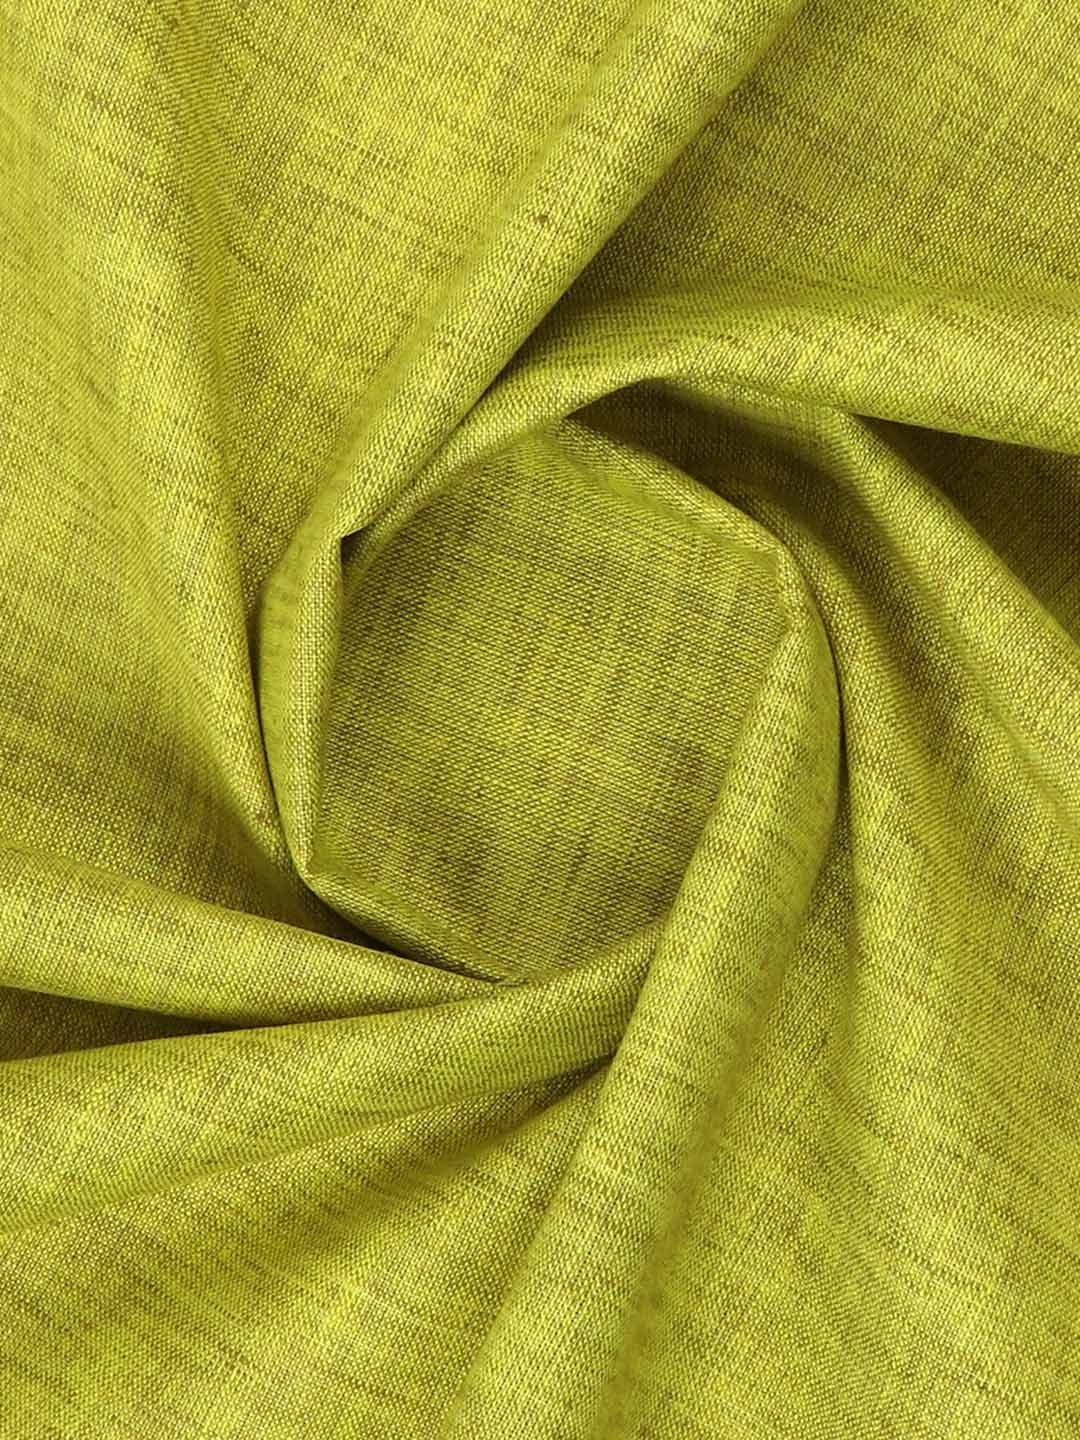 Cotton Blend Green Colour Kurtha Fabric Lampus